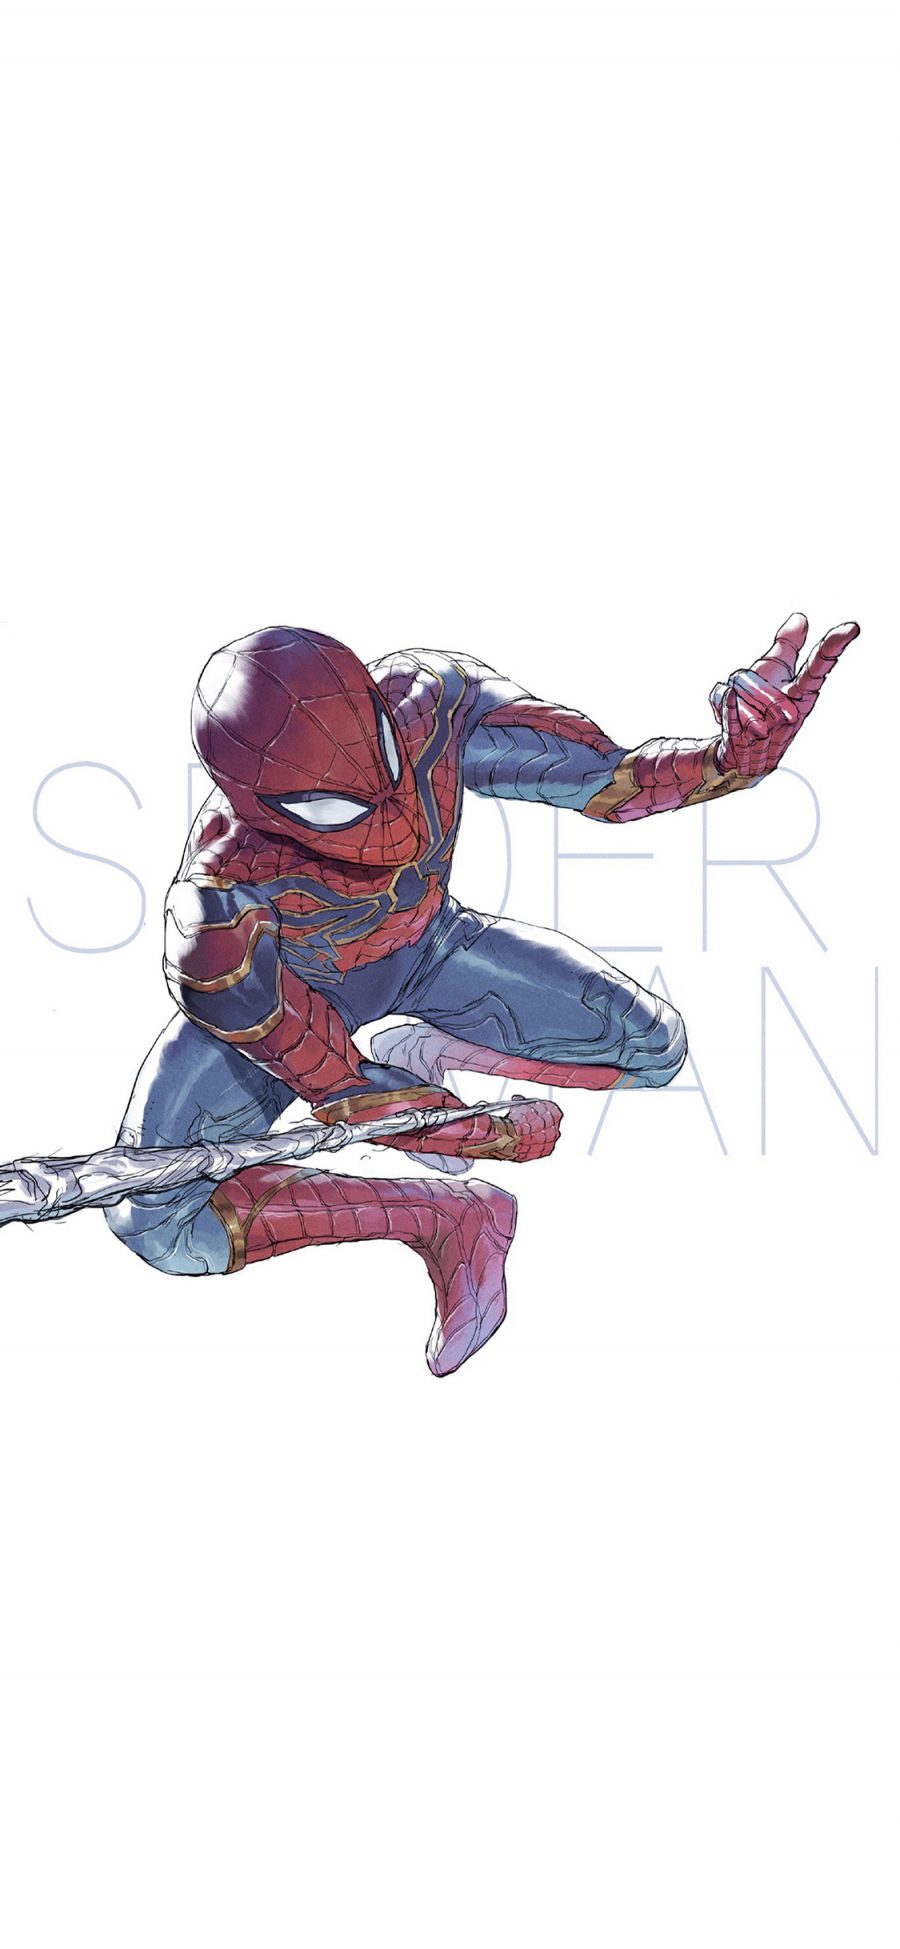 [2436×1125]蜘蛛侠 超级英雄 欧美 复仇者联盟 手绘 苹果手机动漫壁纸图片